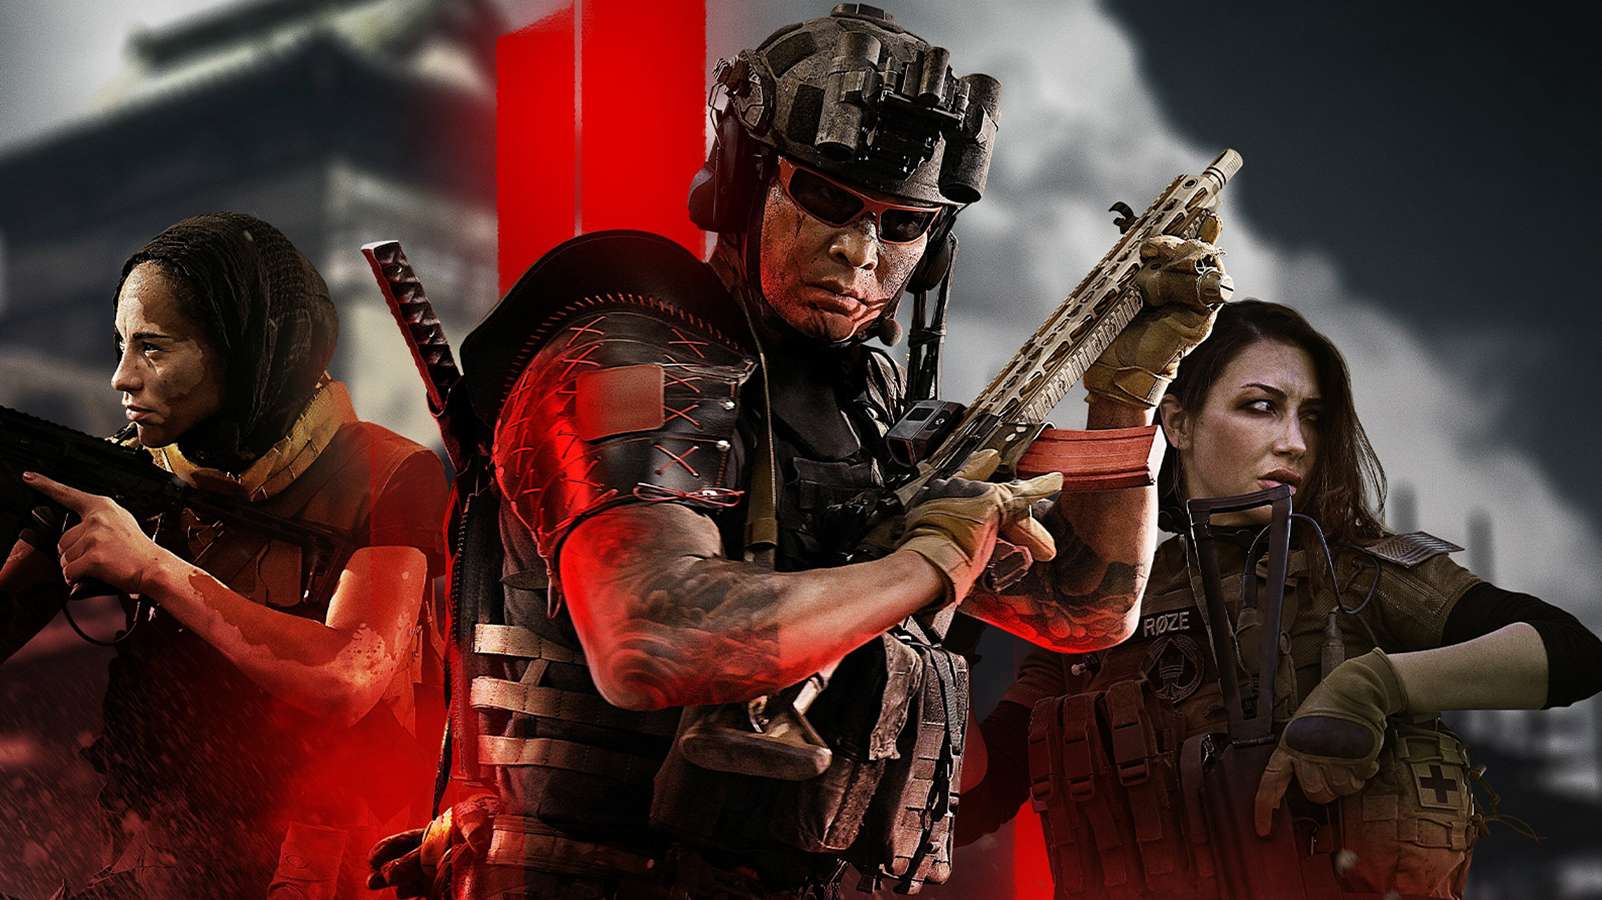 Modern Warfare 2 cover art